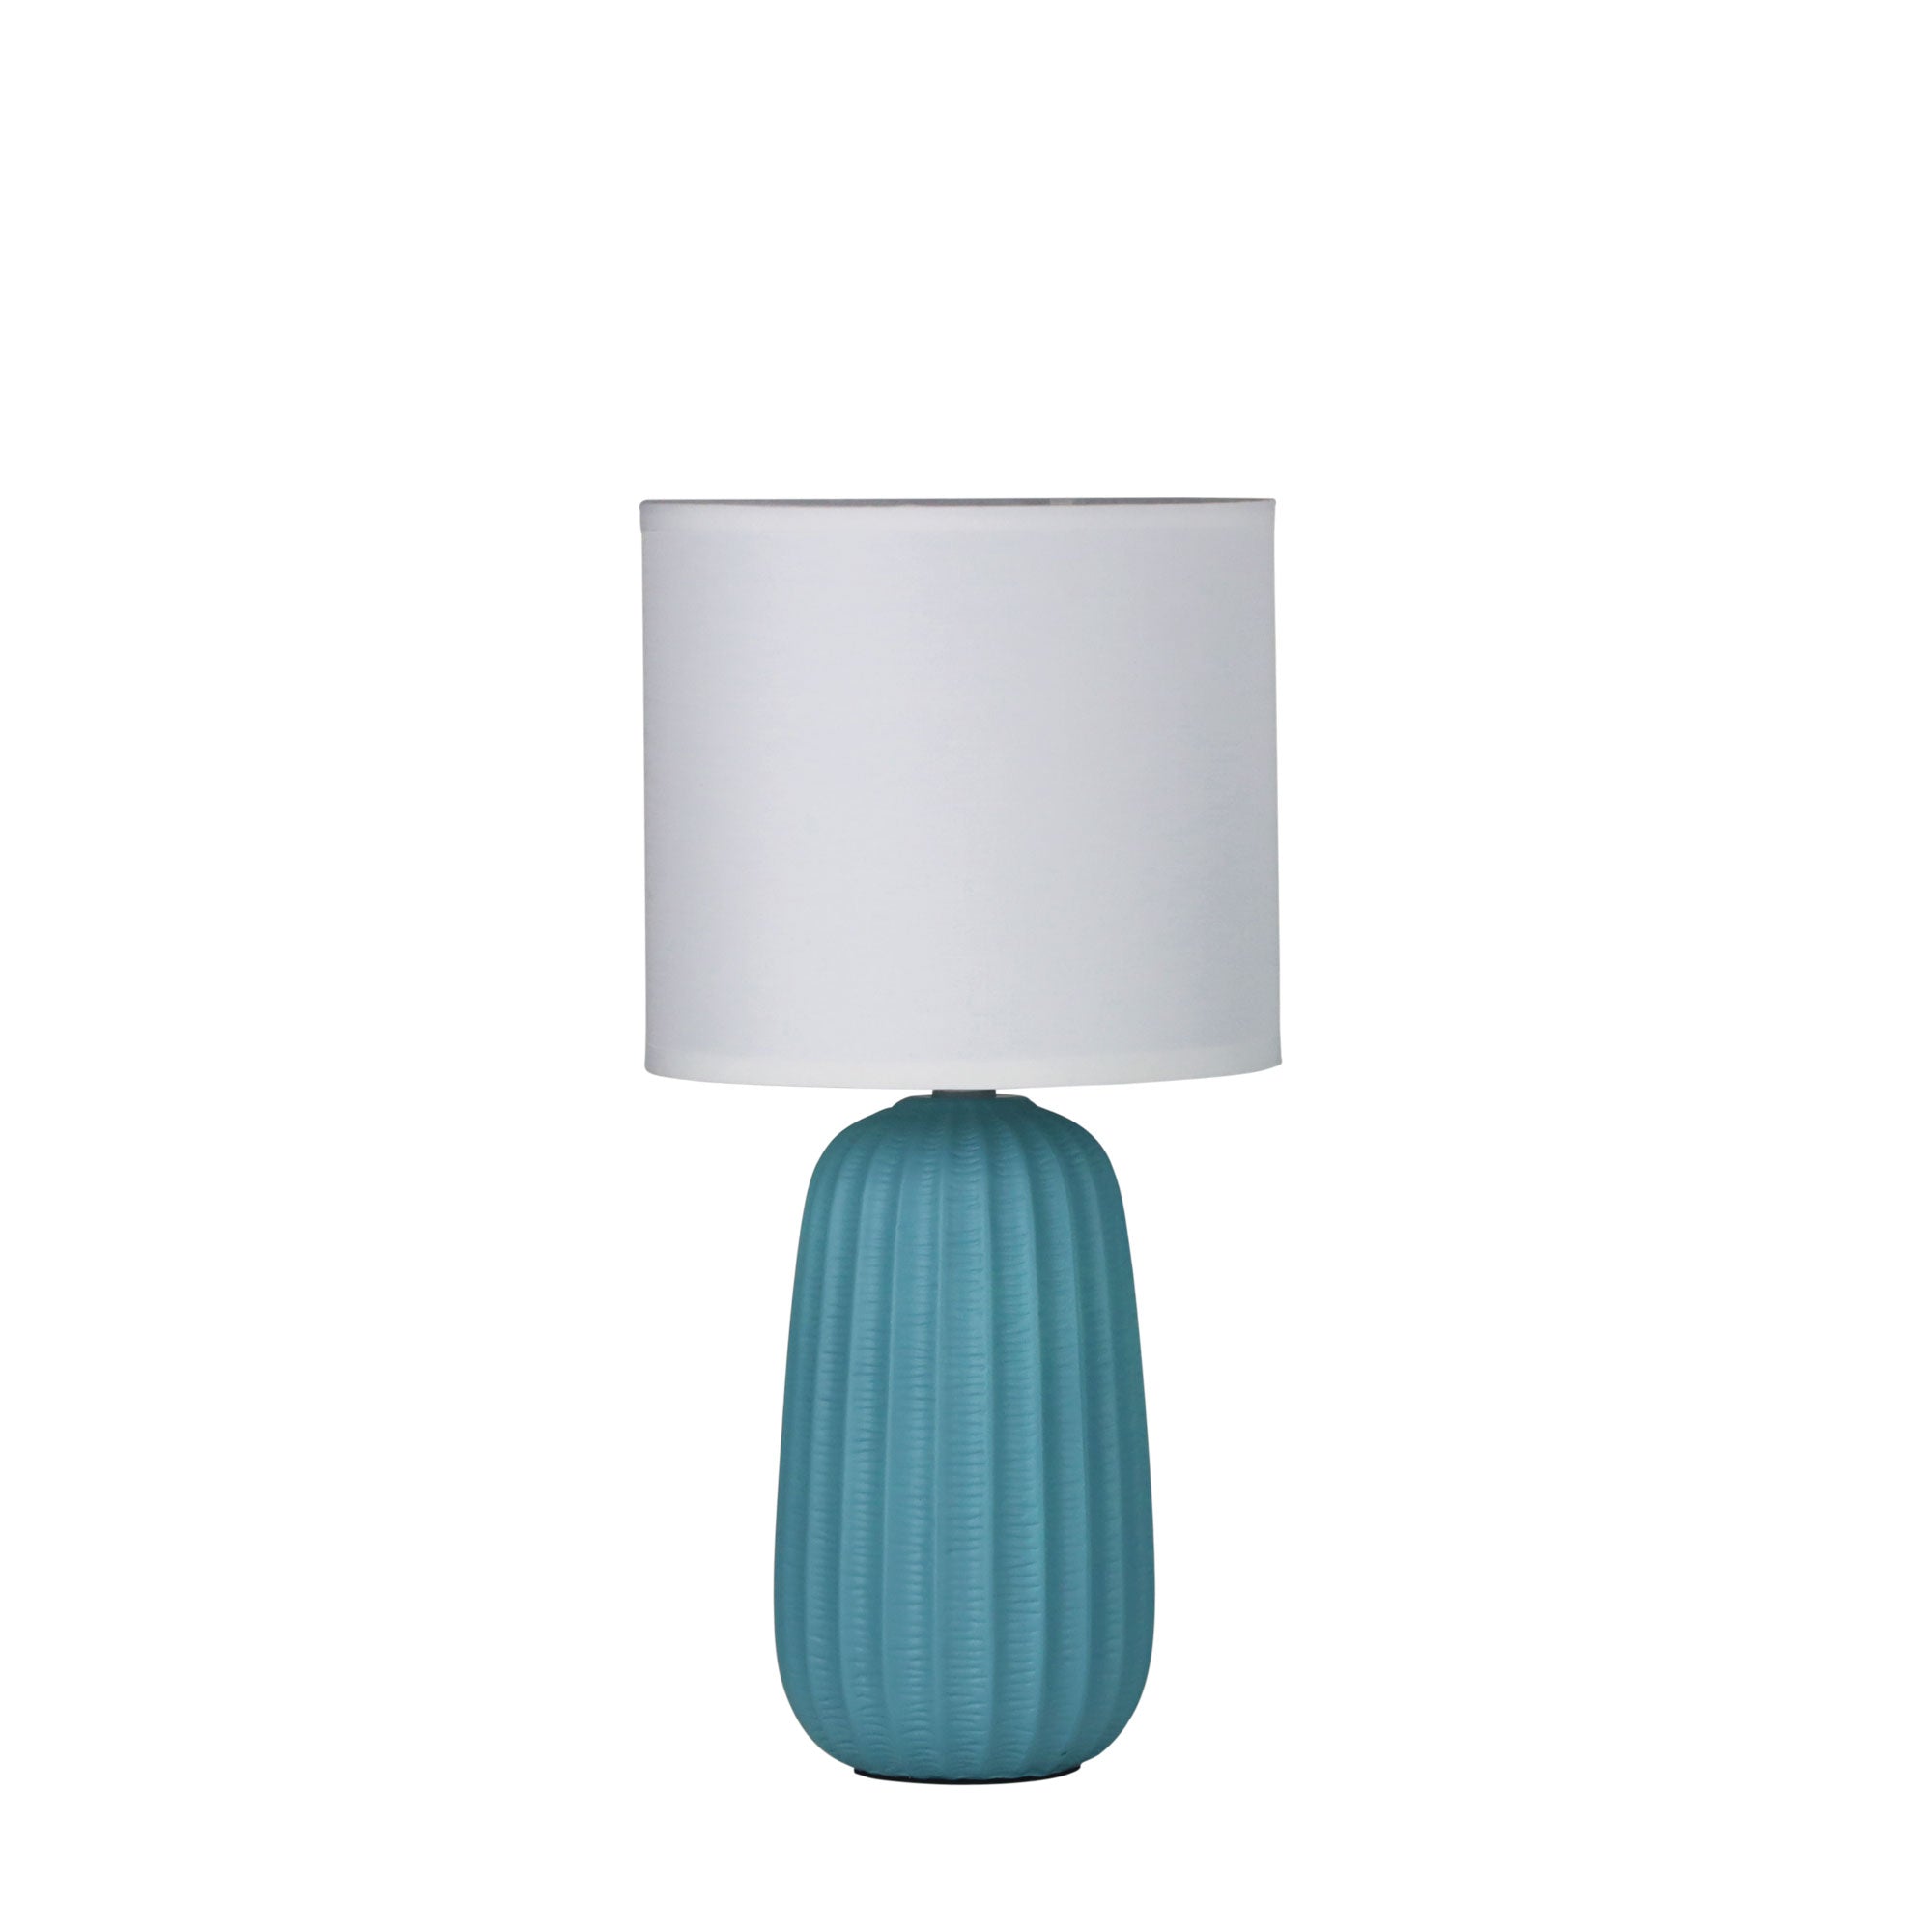 Benjy.20 1 Light Table Lamp Blue - OL90110BL